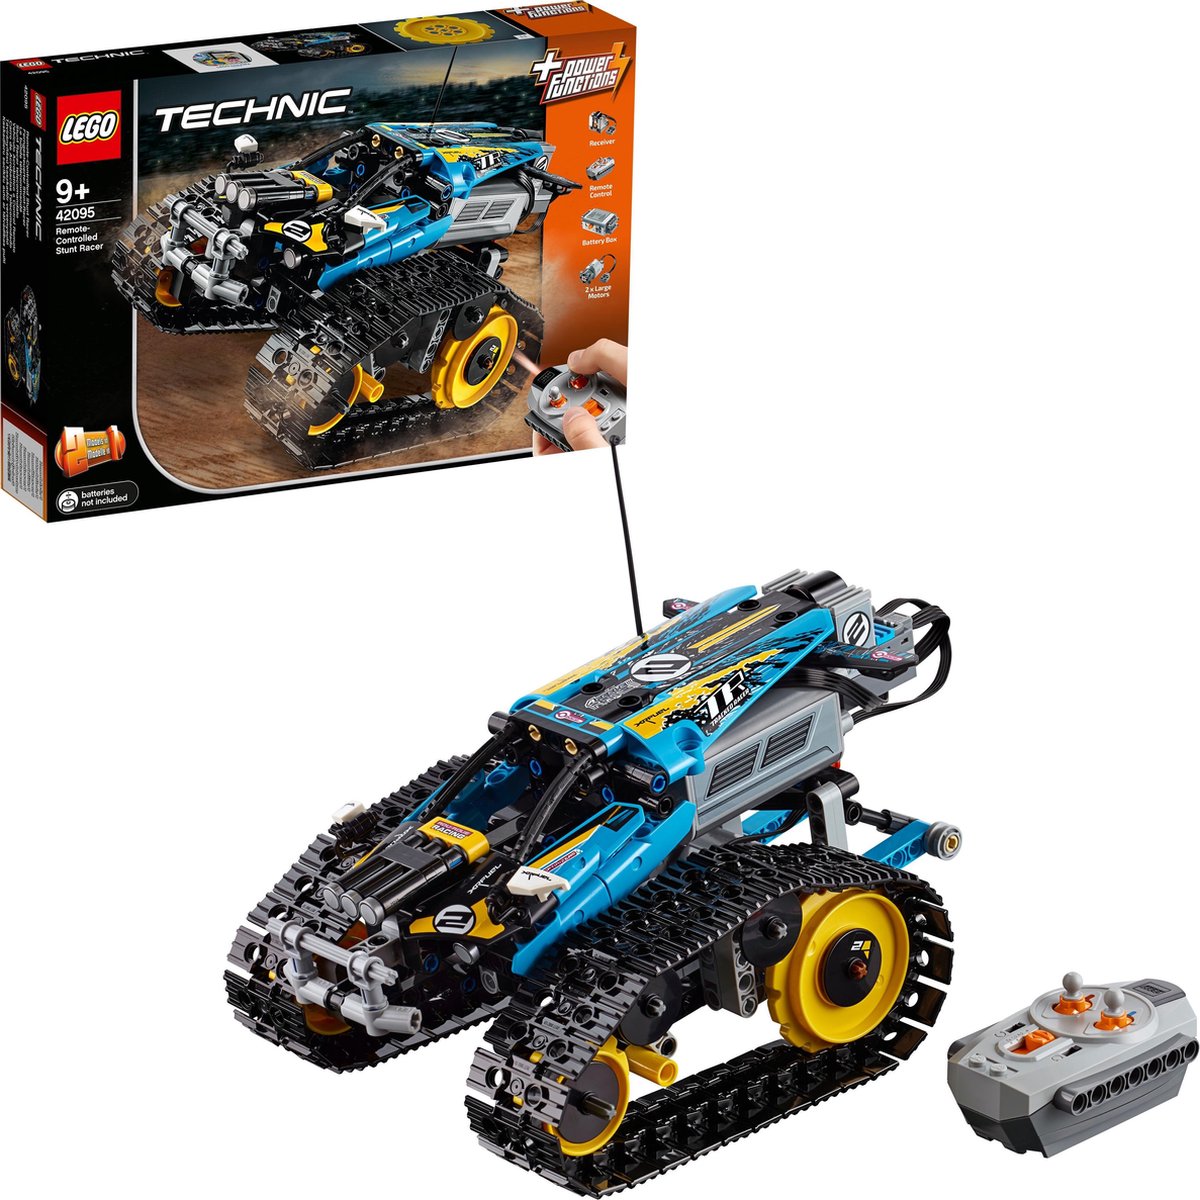 LEGO Technic RC Stunt Racer - 42095